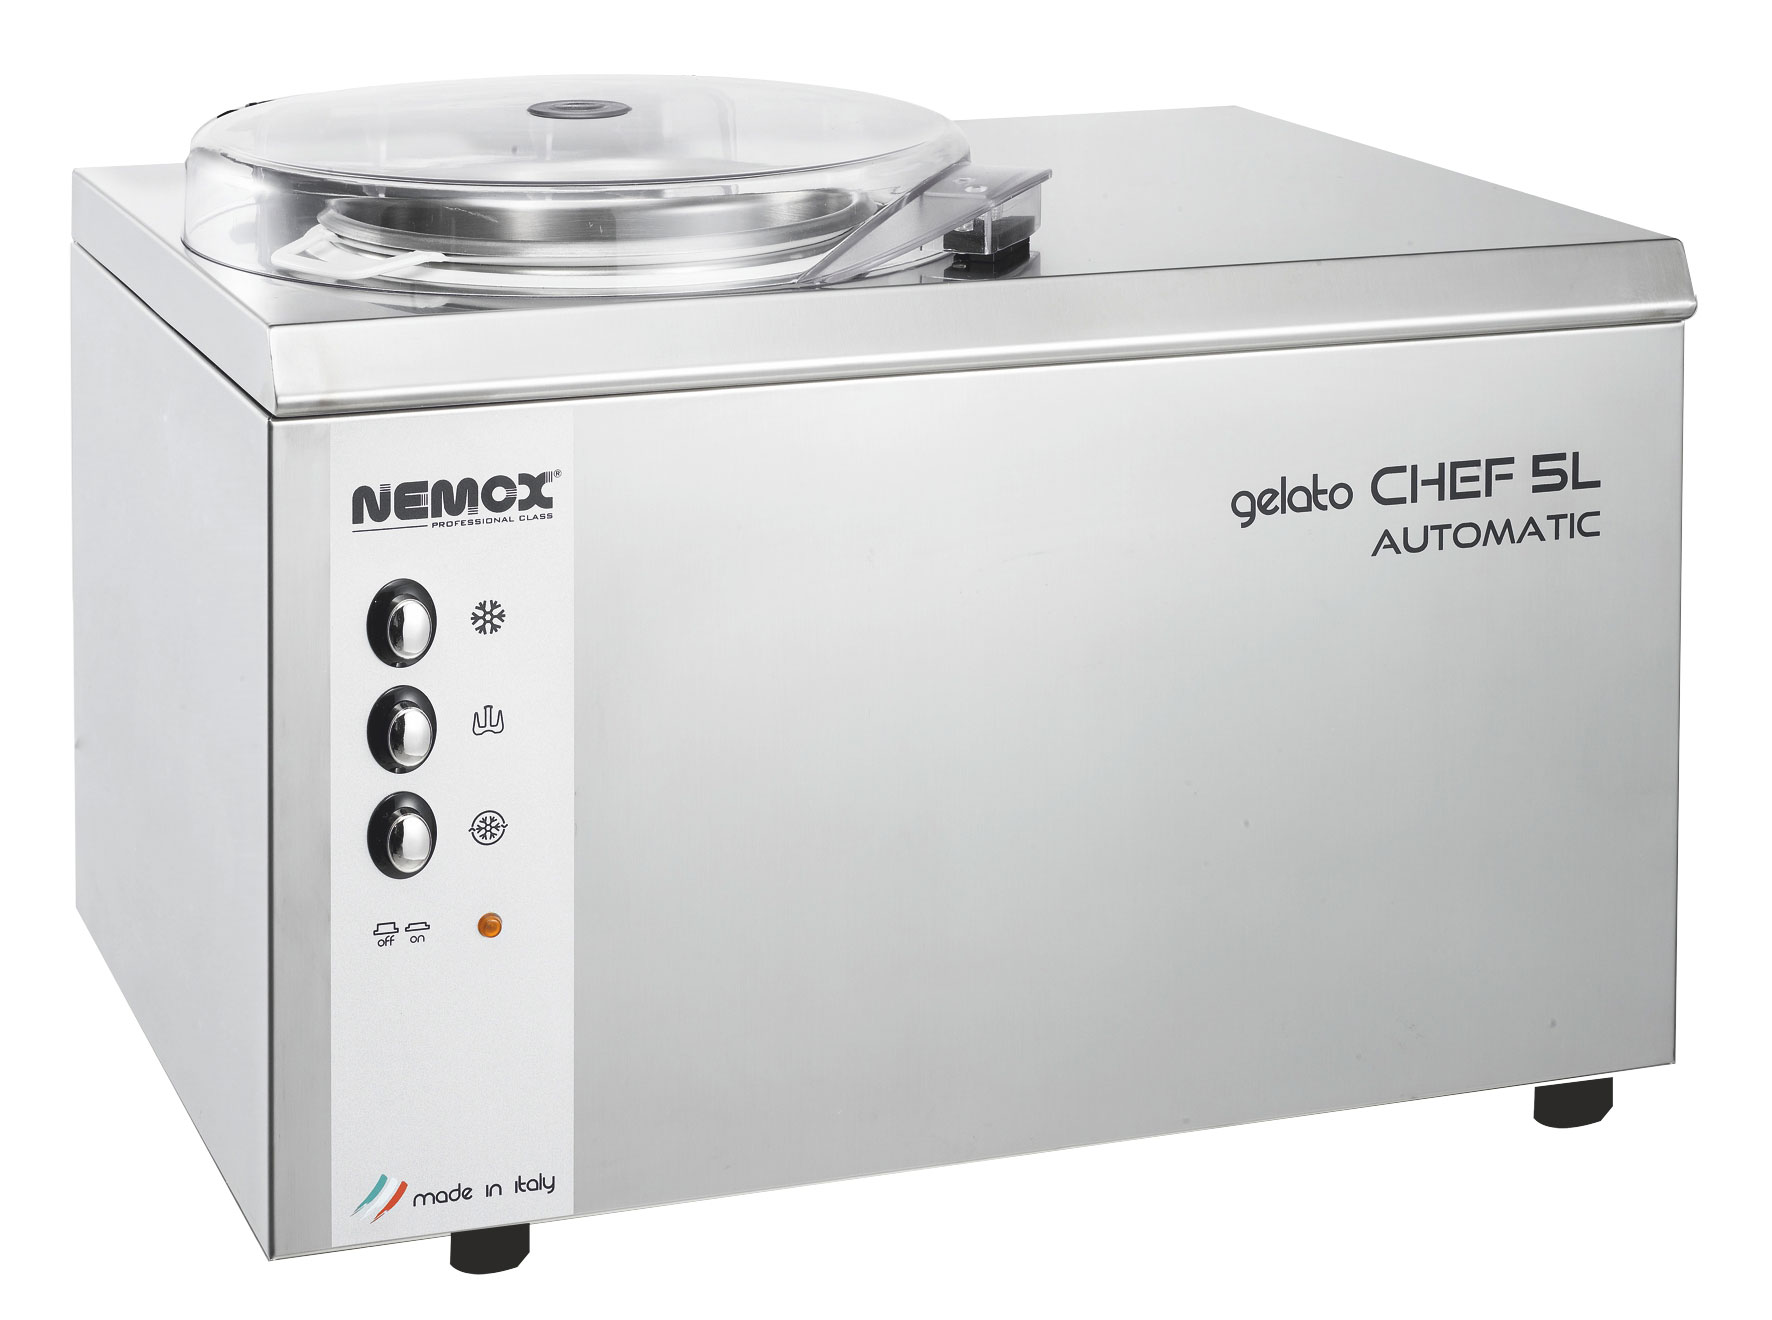 Фризер для мягкого мороженого Nemox Gelato Chef 5L Automatic